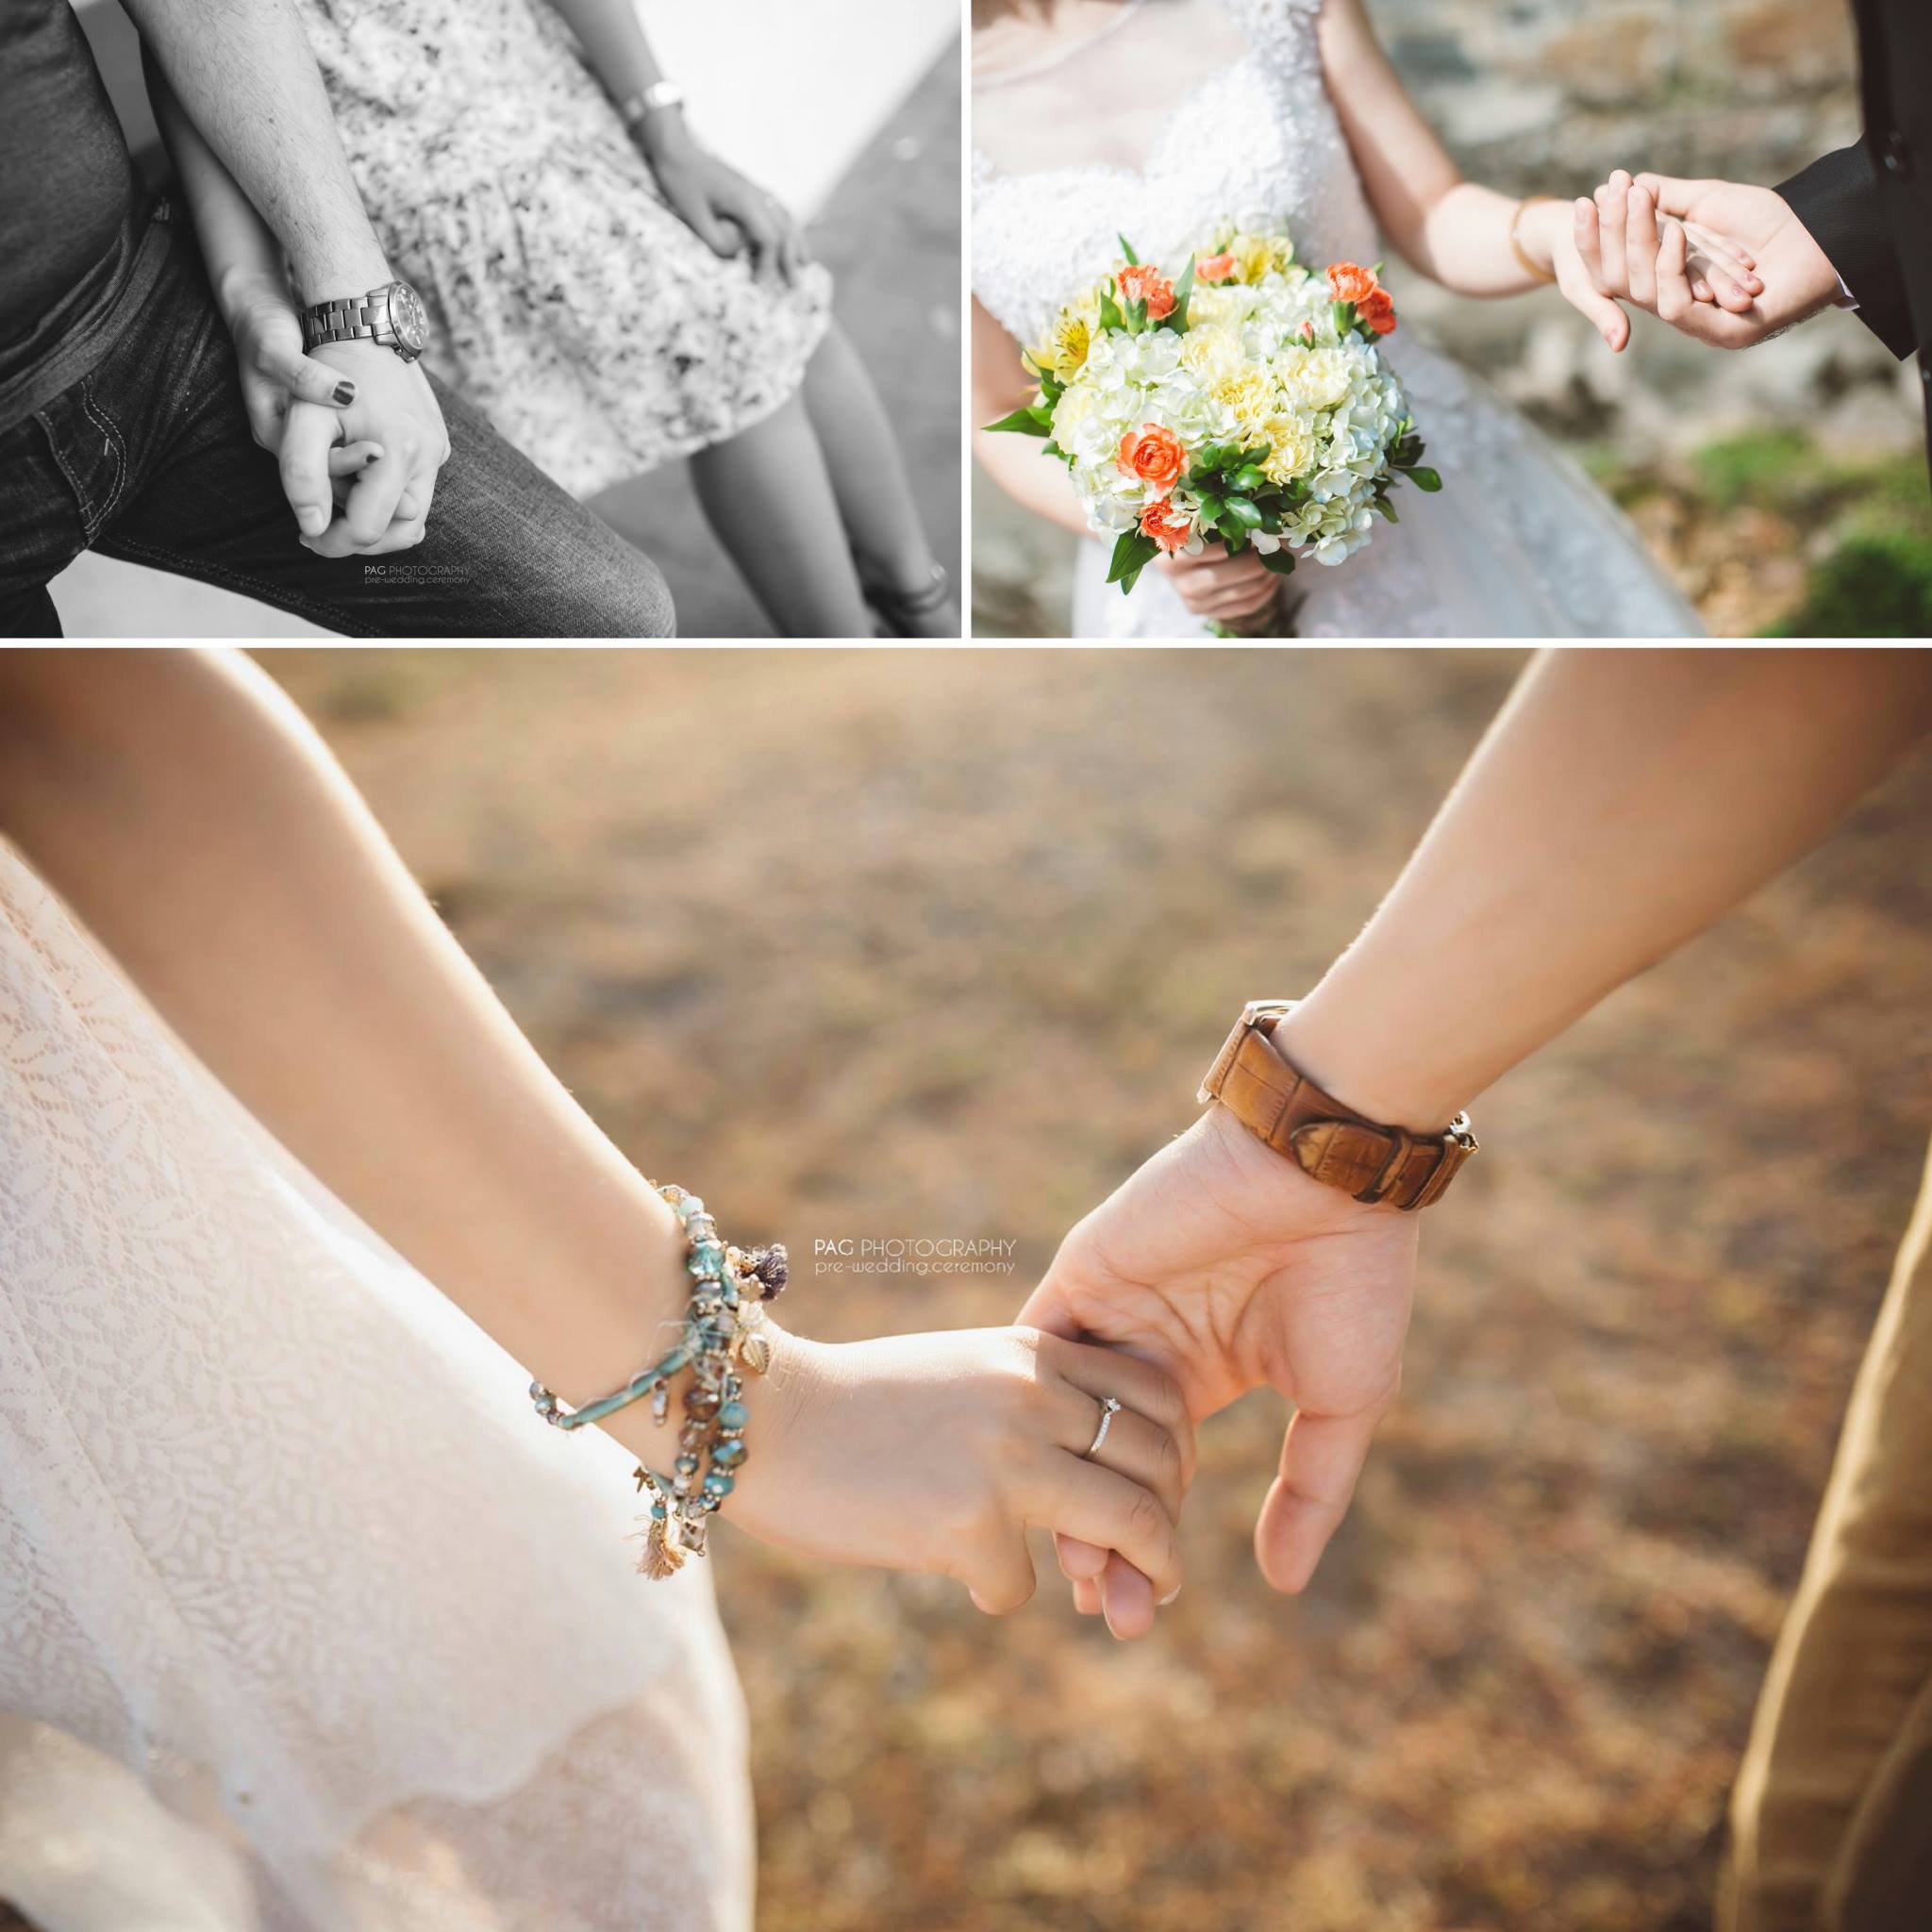 Tổng hợp ảnh cưới nắm tay nhau với nhiều phong cách khác nhau